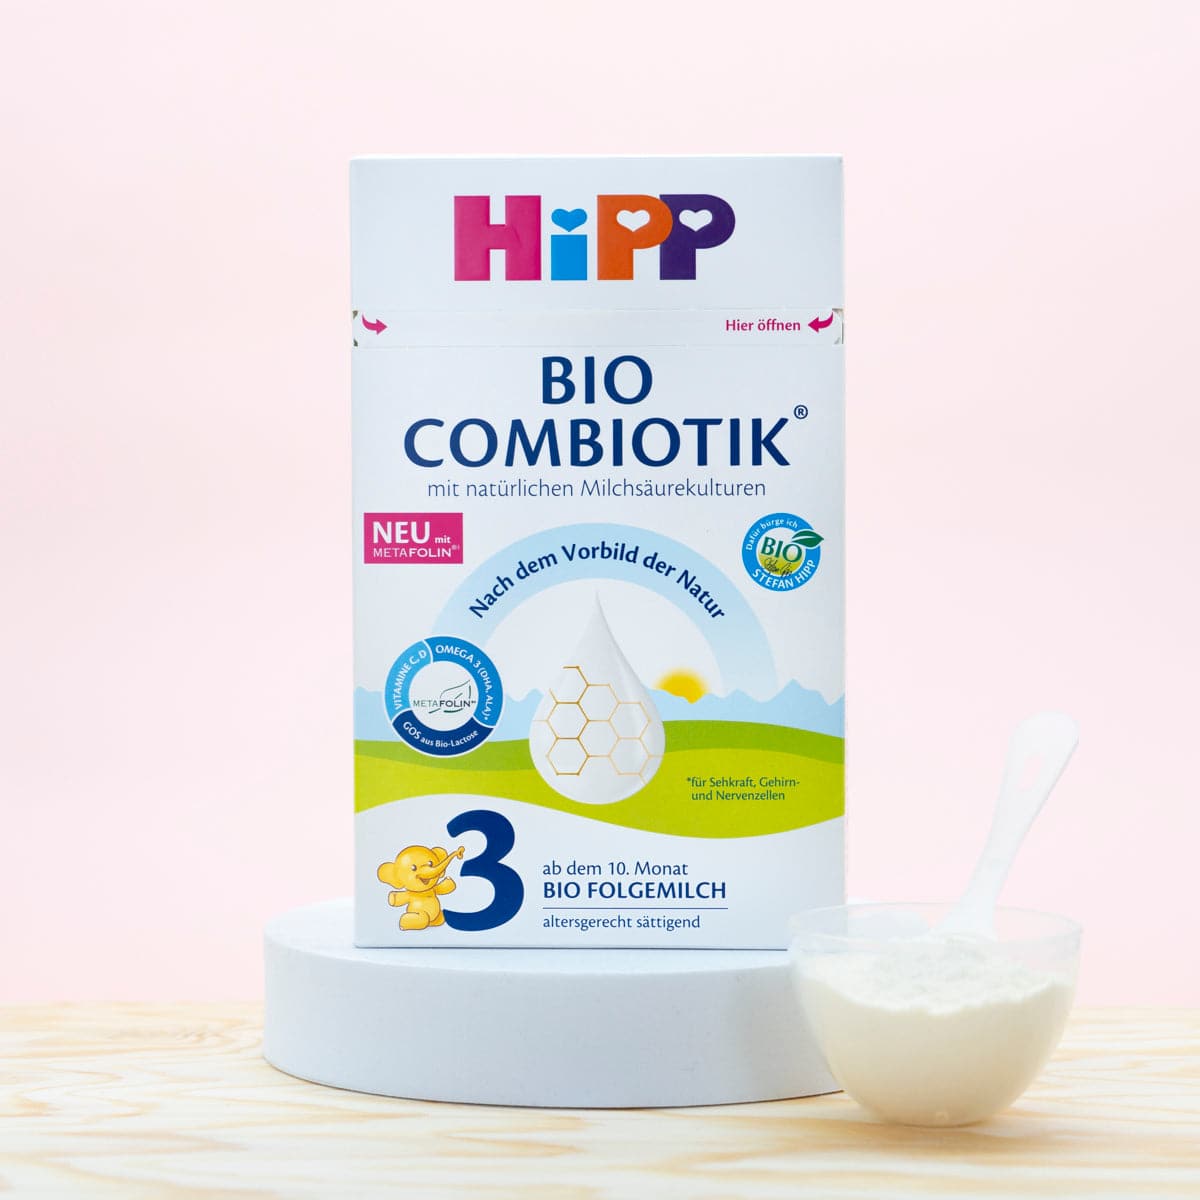 HIPP COMBIOTIK bio lait crois3 poud